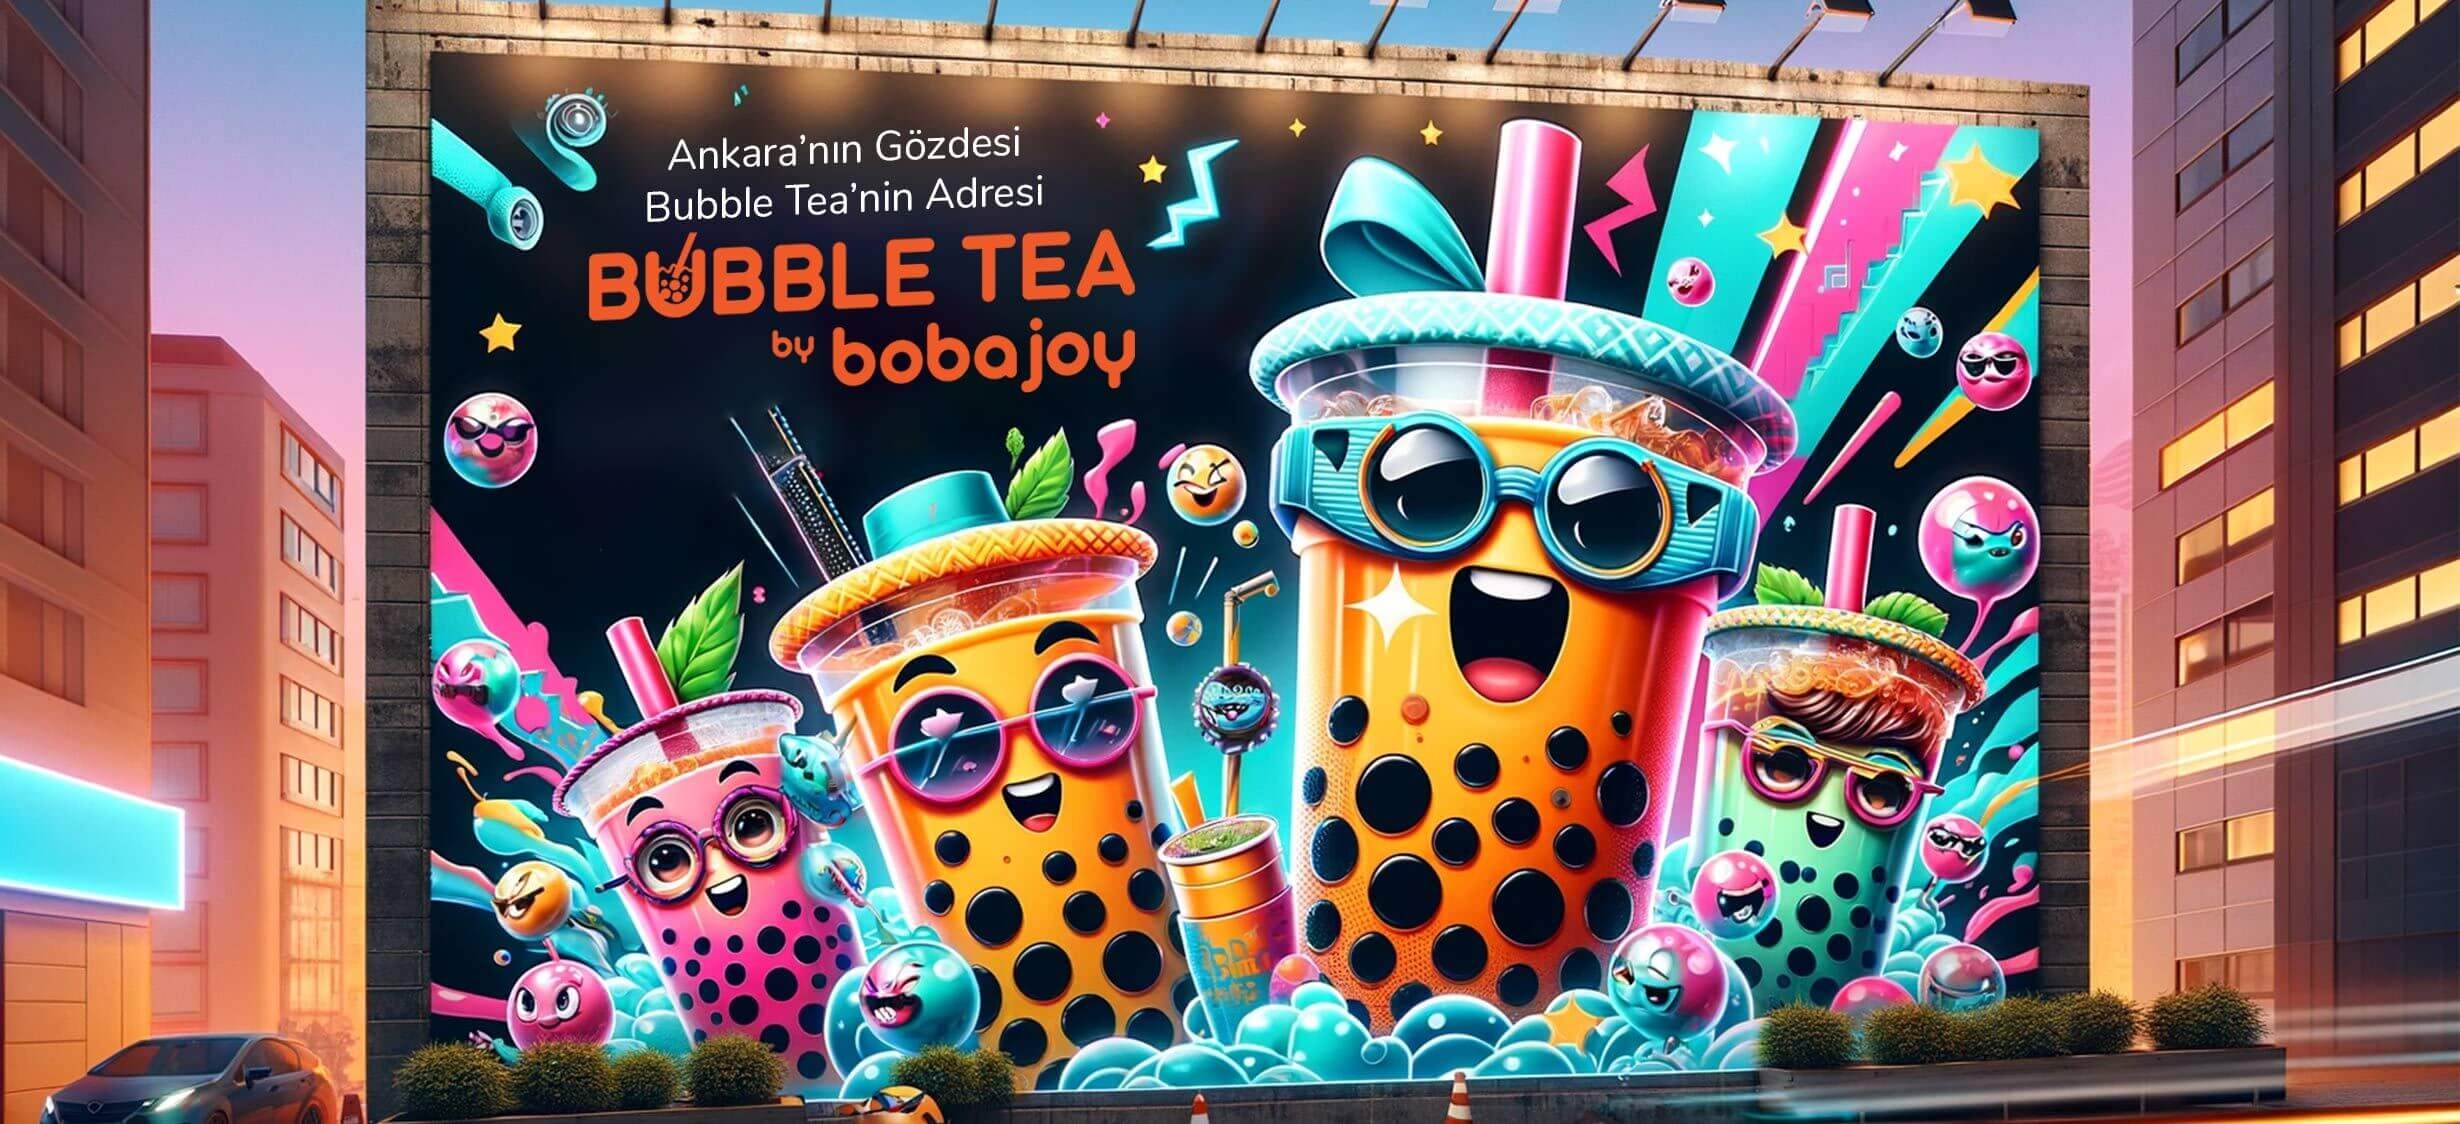 Ankara’nın Gözdesi: Bubble Tea’nin Adresi Bobajoy!